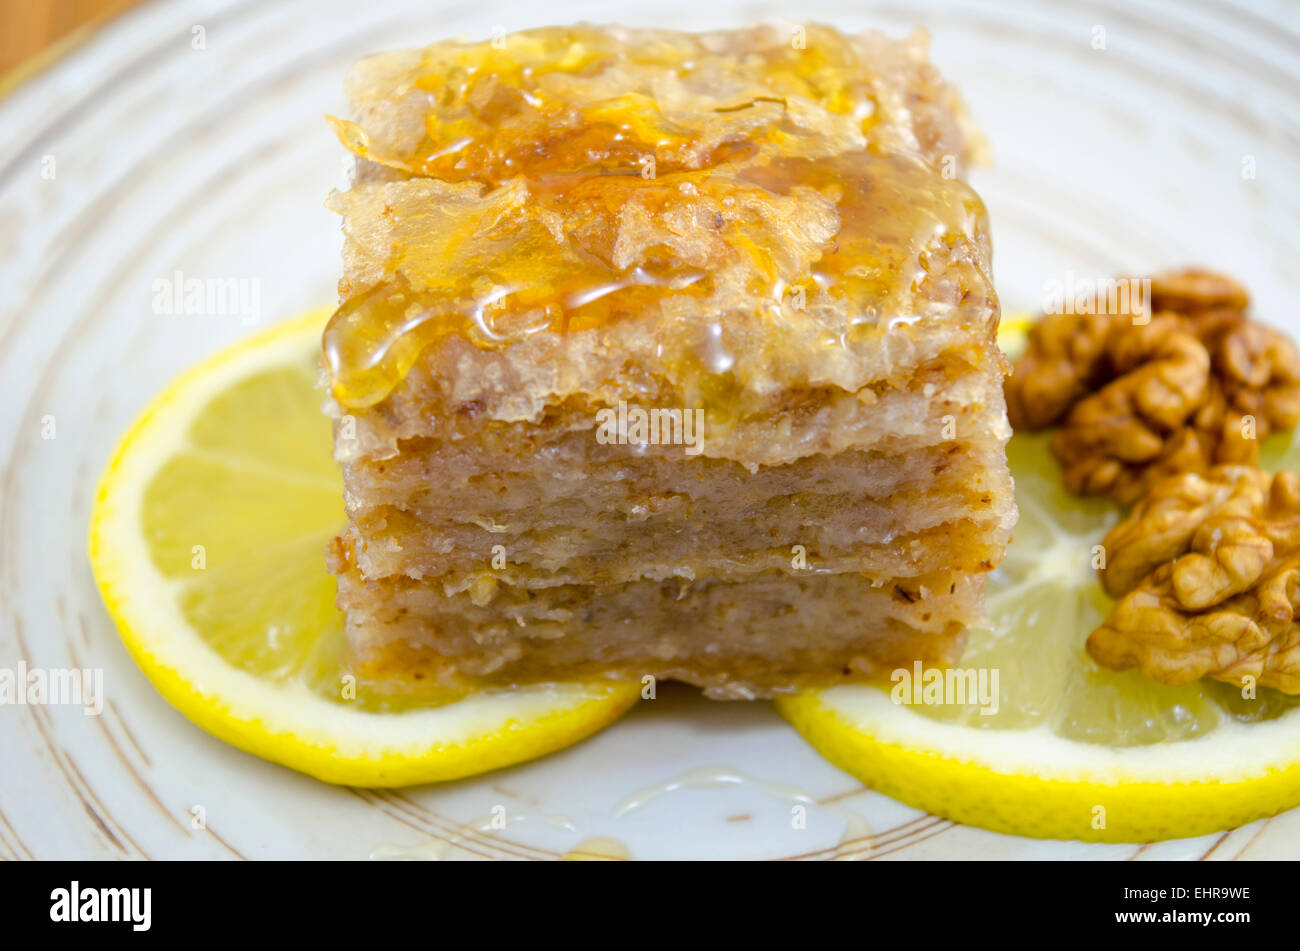 Baklava juteuse sur une assiette décorée avec du citron et noix, prêts à être mangés Banque D'Images